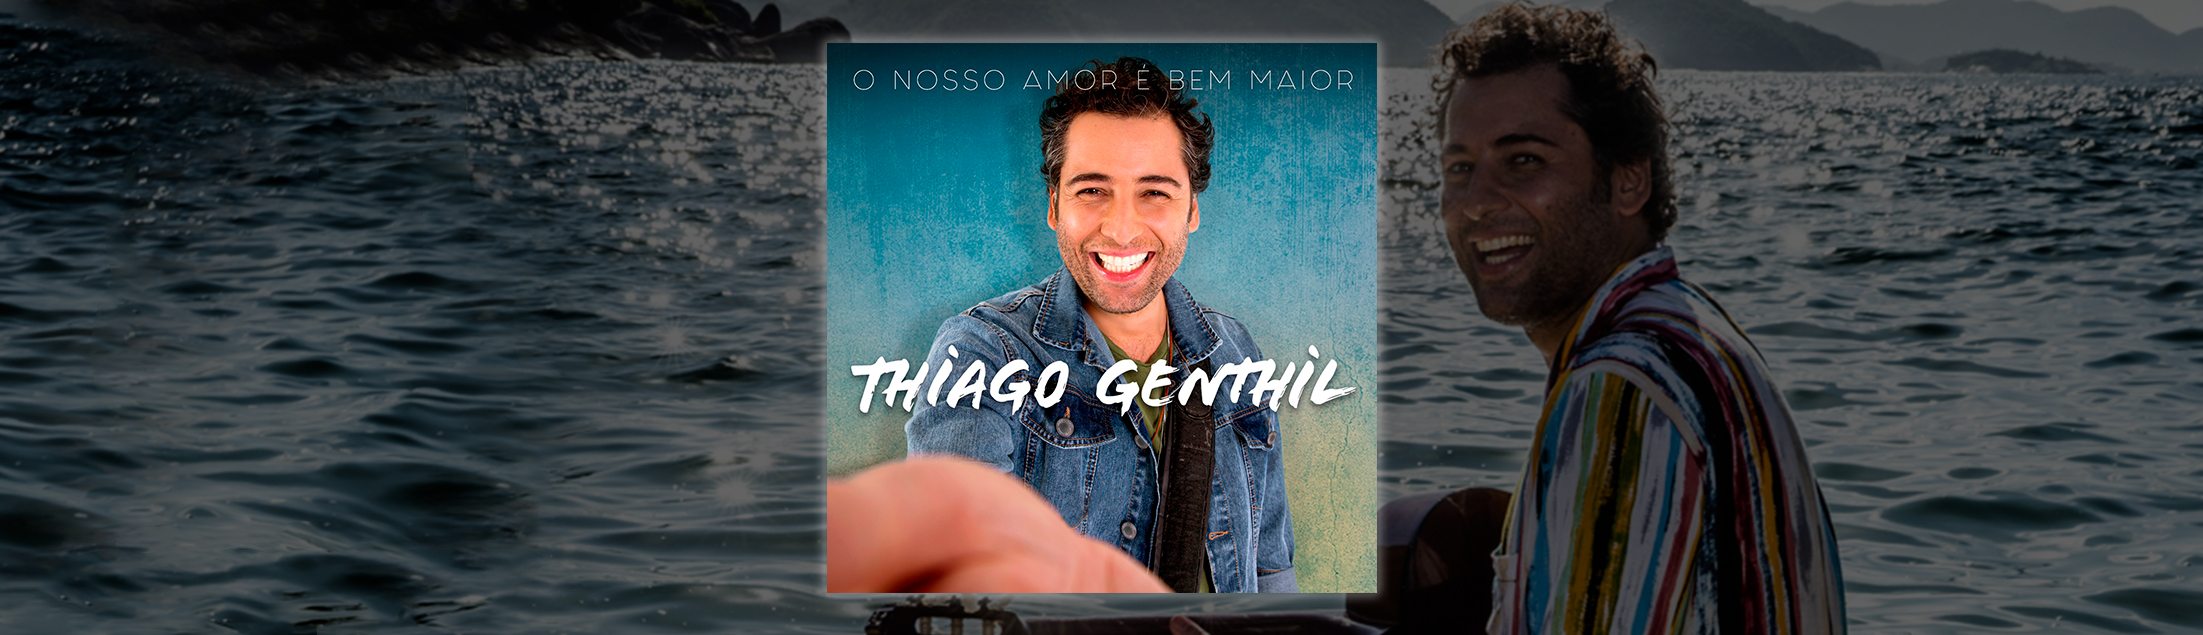 Thiago Genthil lança EP 'O nosso amor é bem maior' pela Midas Music